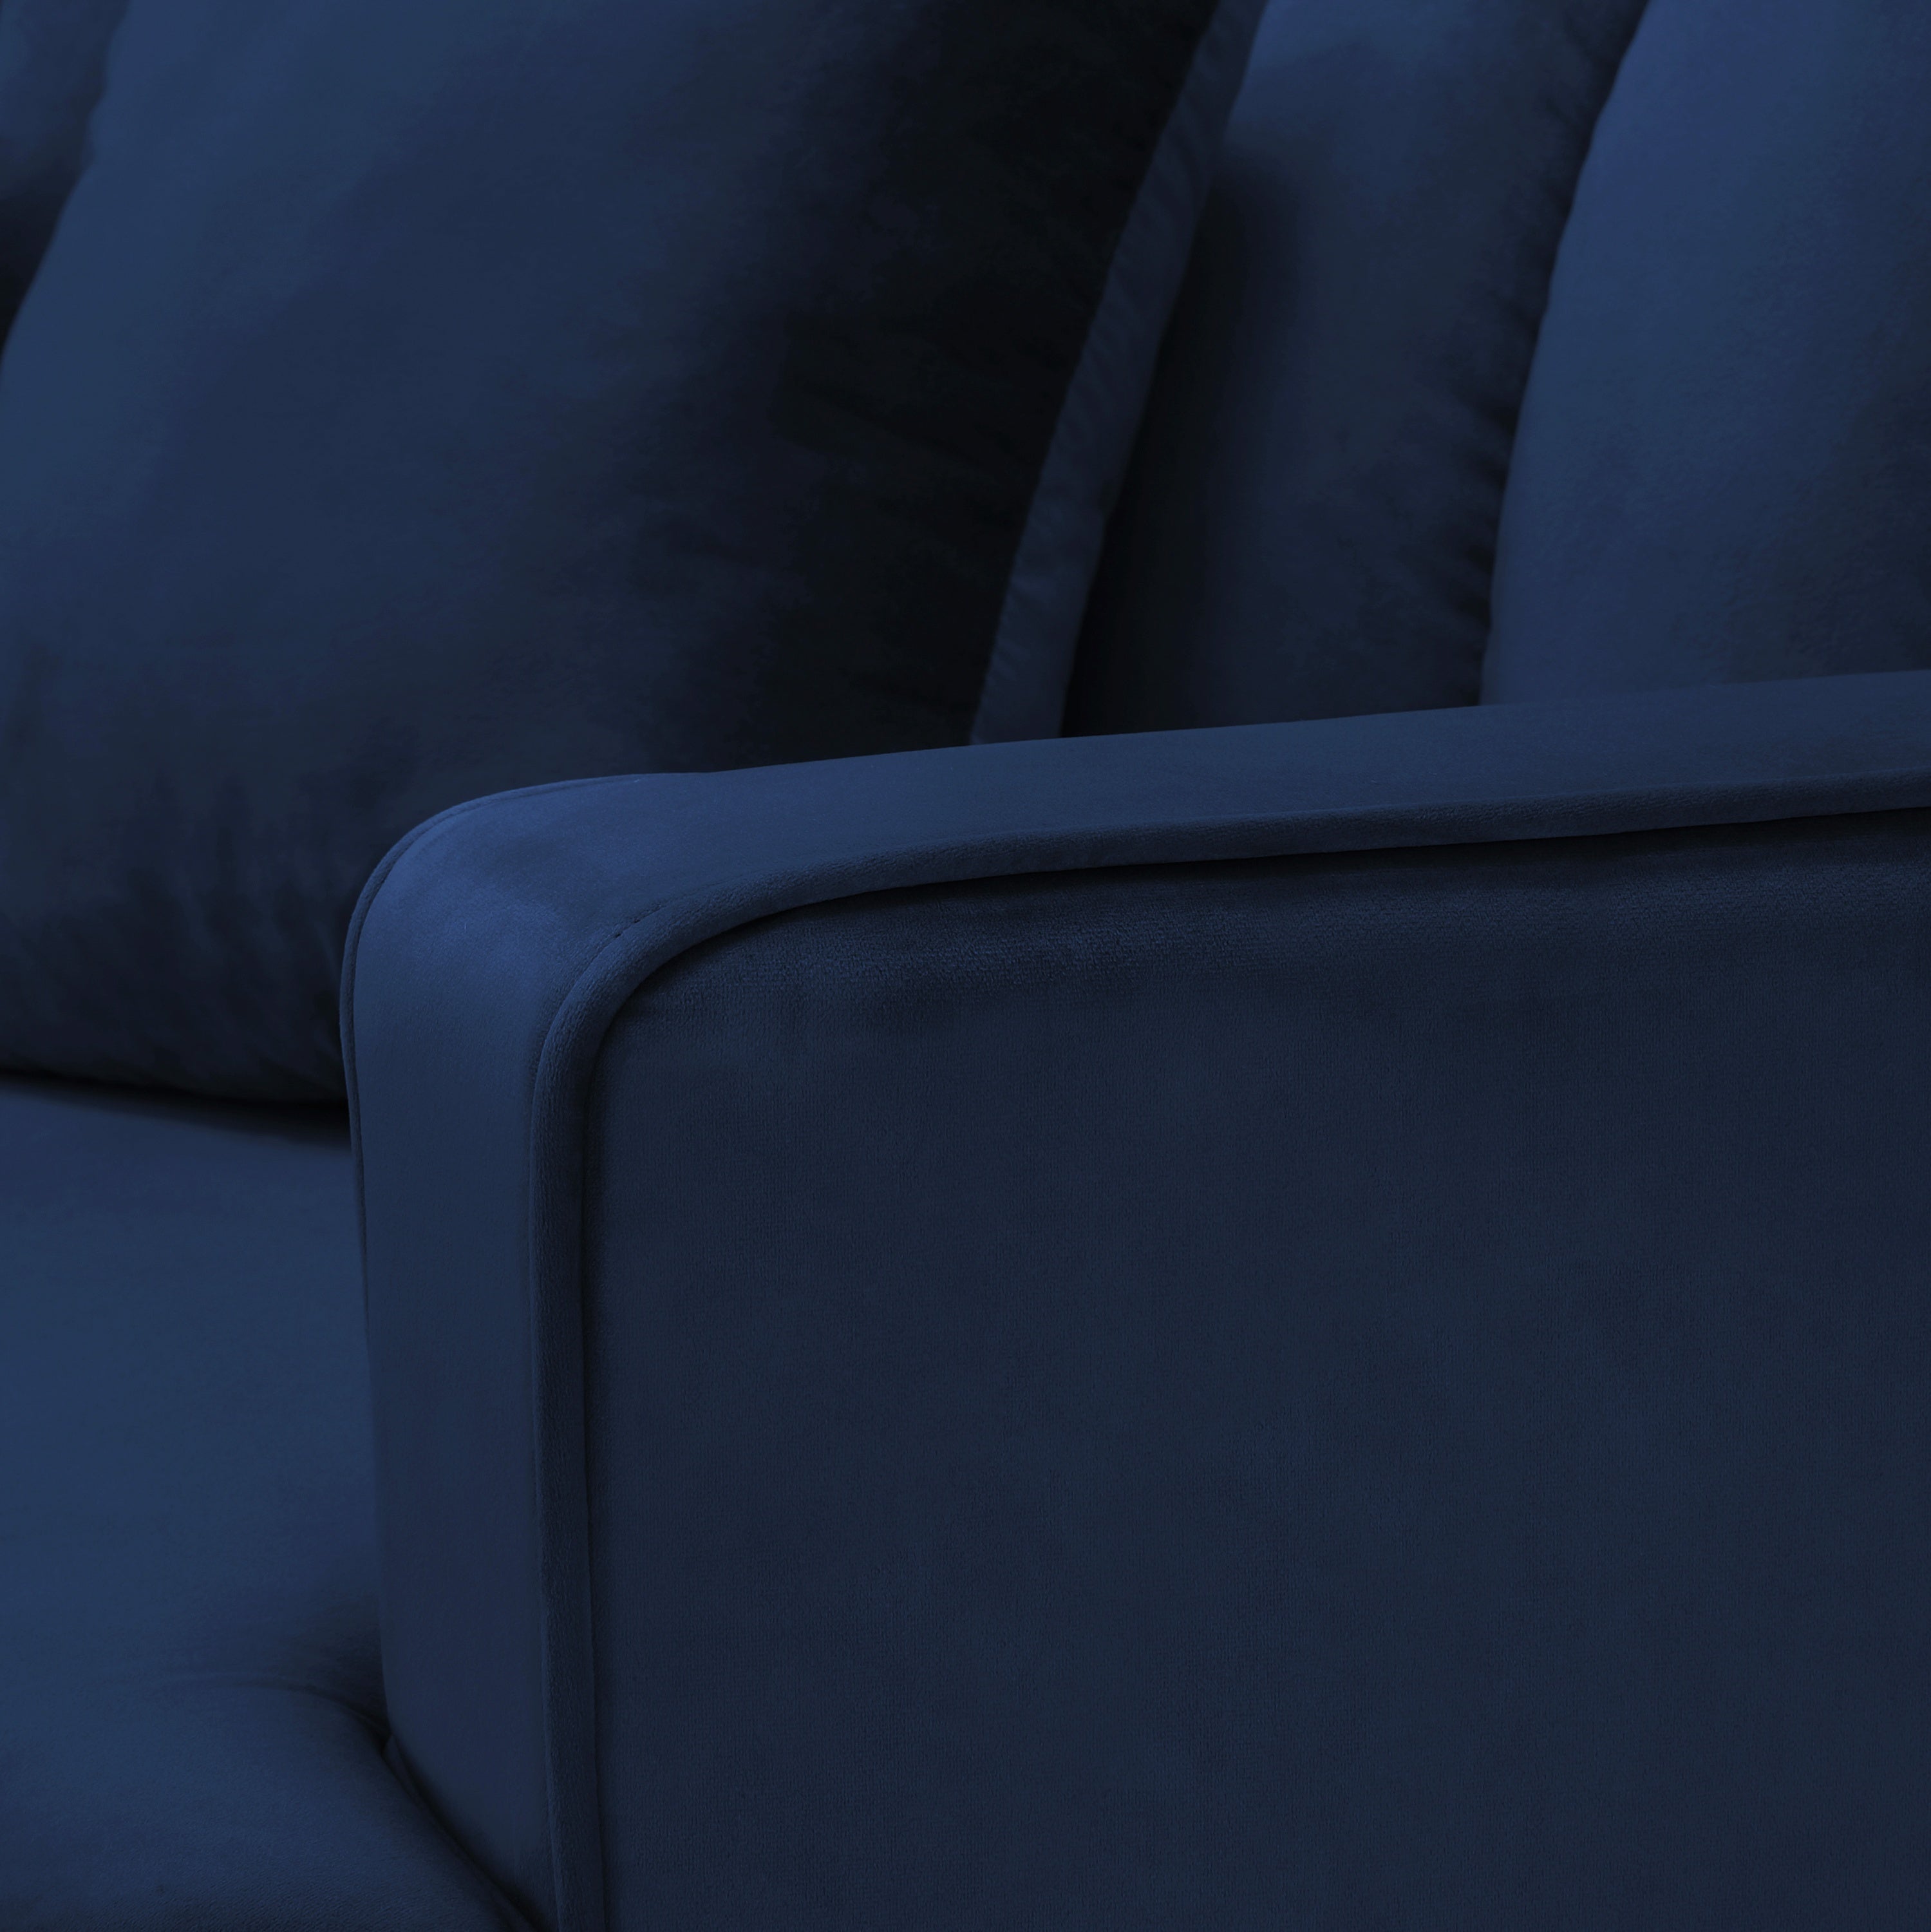 Curved Symmetrical Modular Sofa Navy Blue Velvet